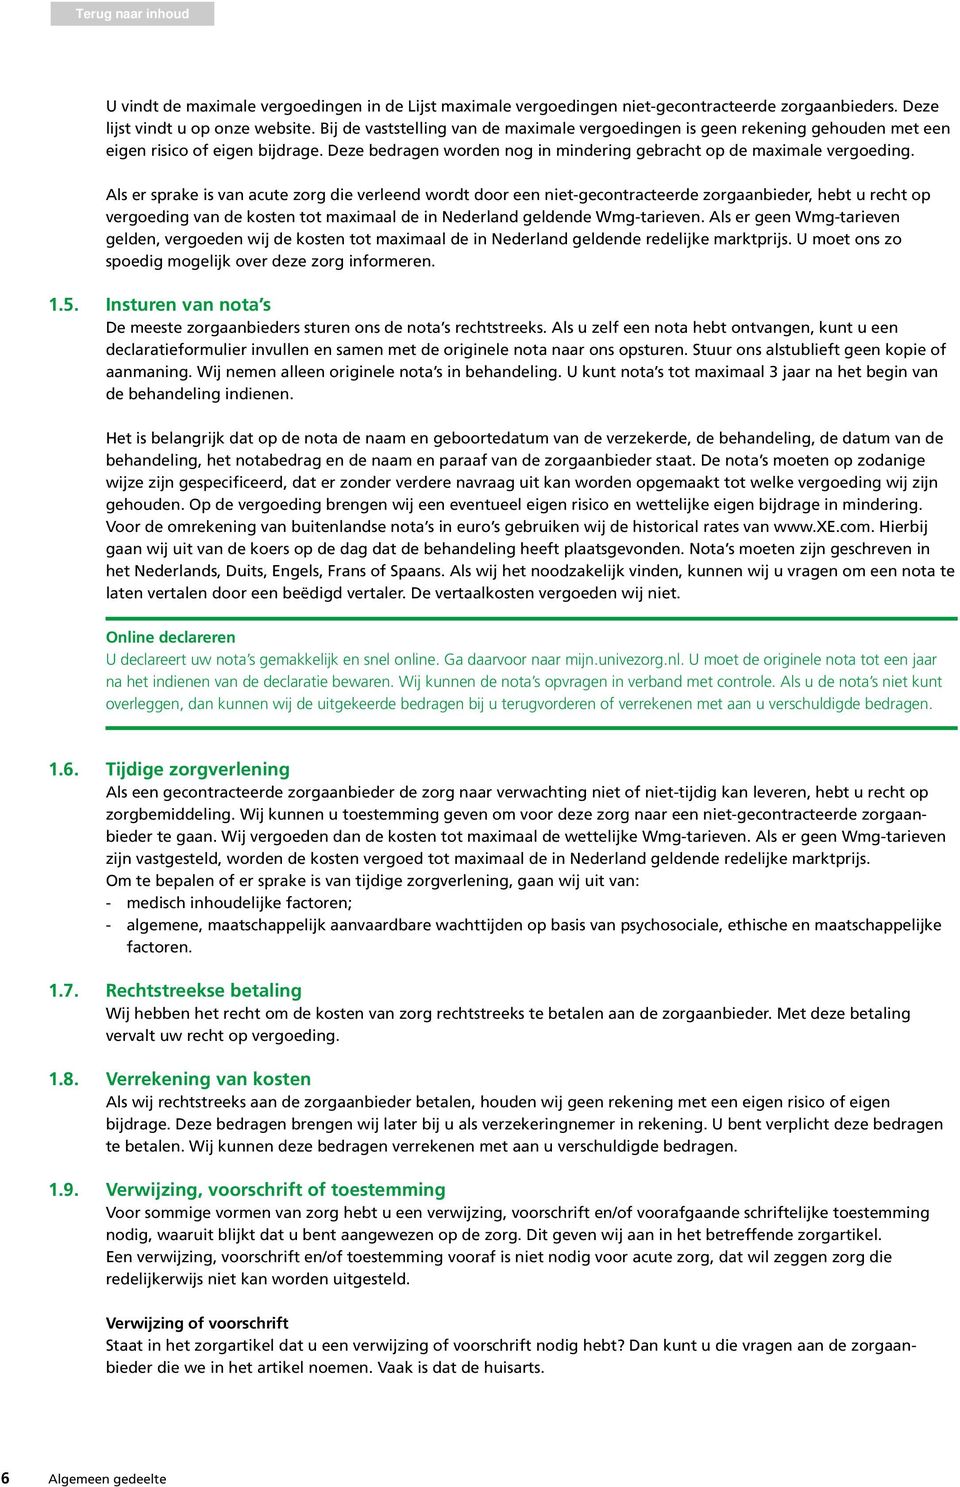 Als er sprake is van acute zorg die verleend wordt door een niet-gecontracteerde zorgaanbieder, hebt u recht op vergoeding van de kosten tot maximaal de in Nederland geldende Wmg-tarieven.